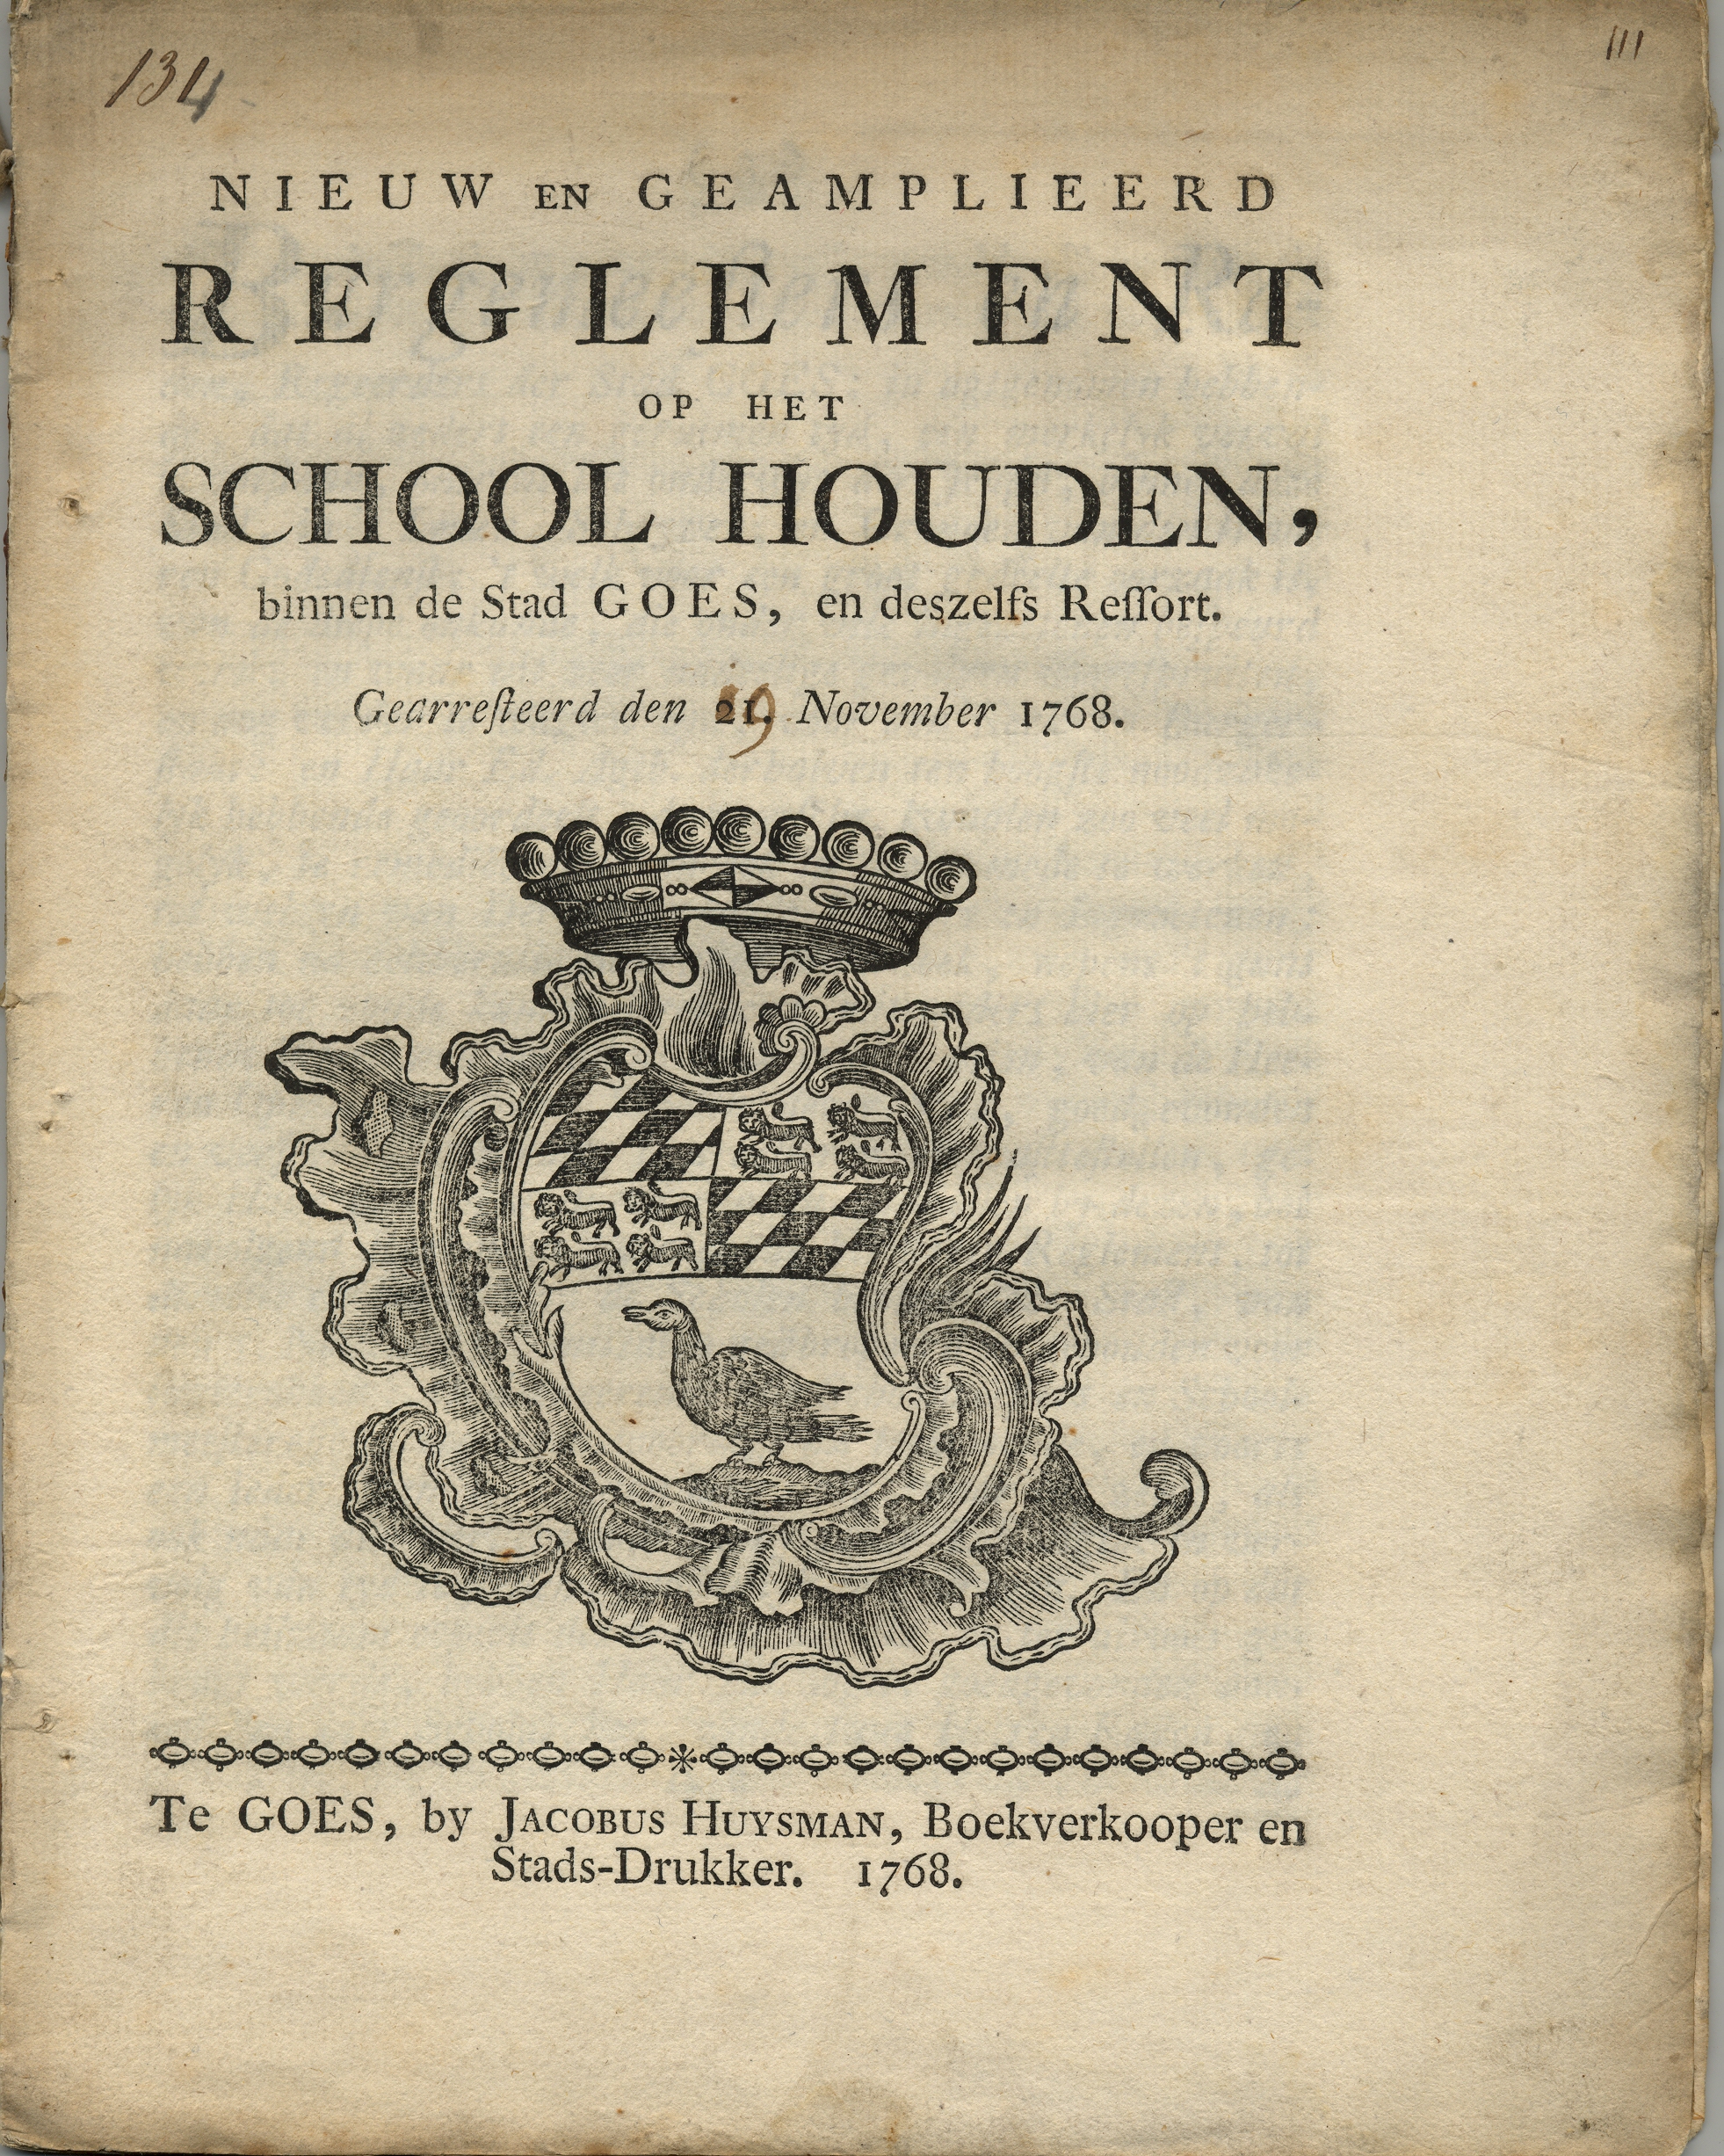 Reglement op het schoolhouden, 1768.